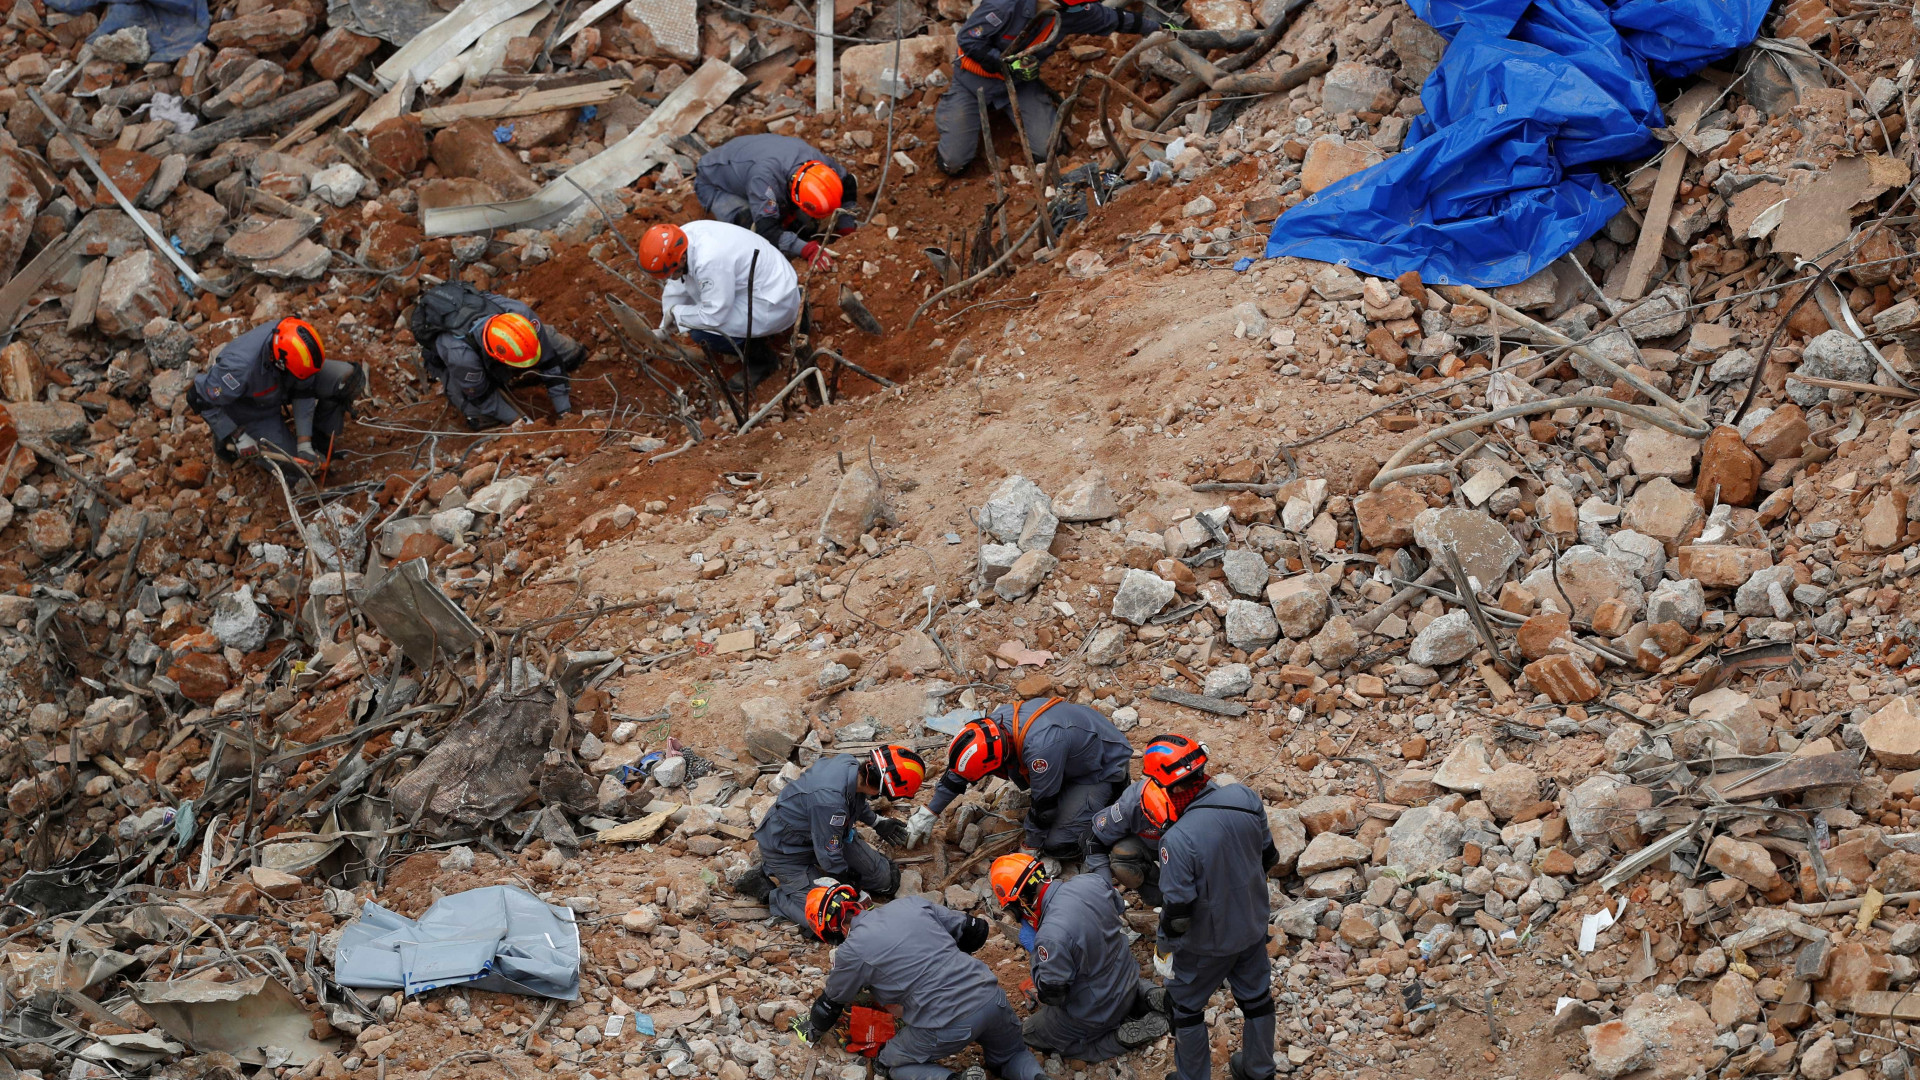 Bombeiros encontram novos restos mortais nos escombros de prédio em SP